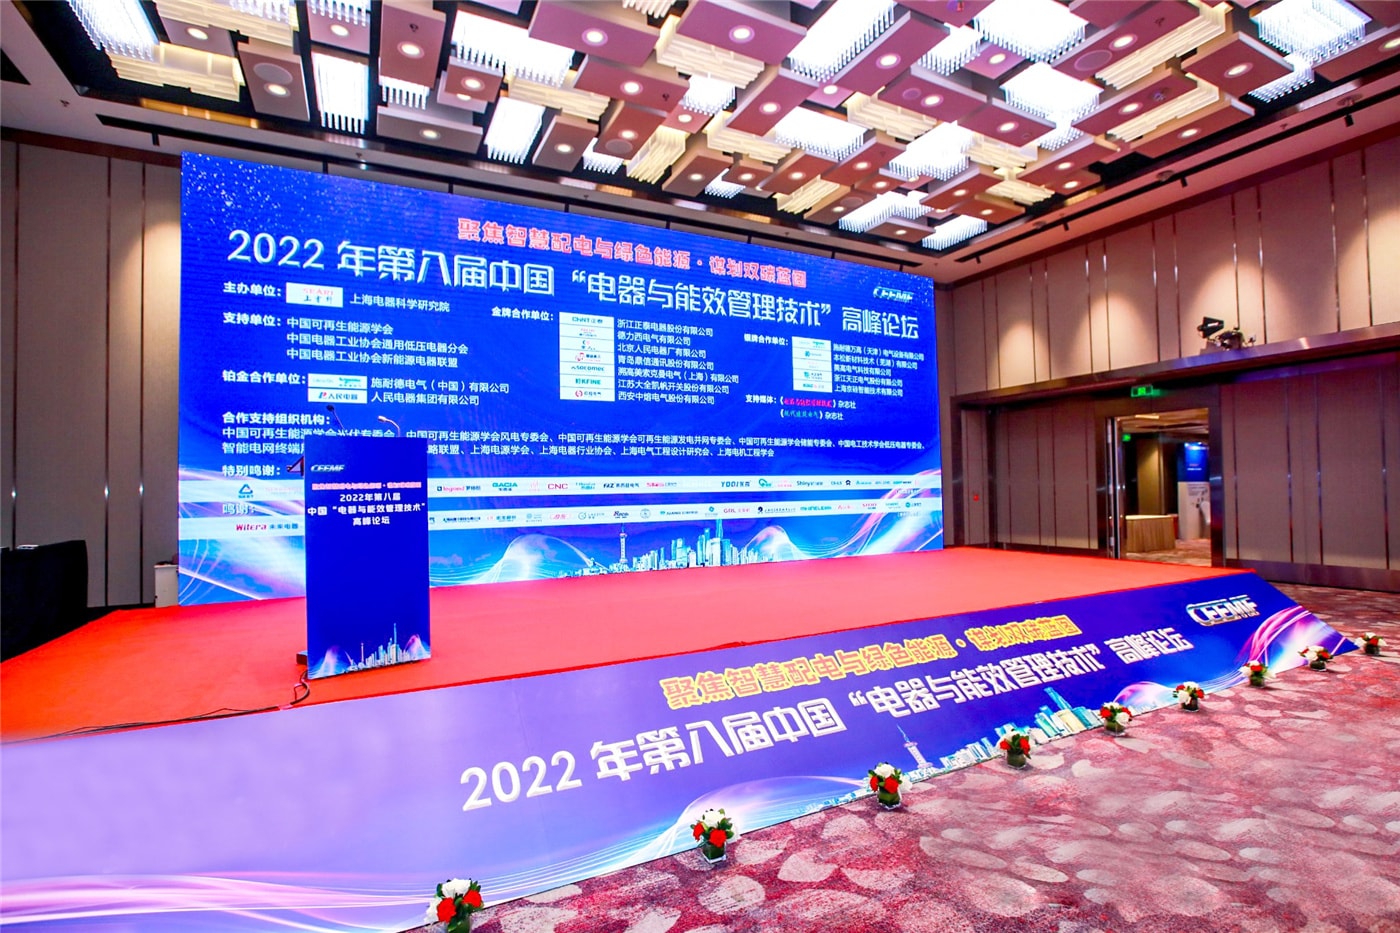 Benlong Automation fue invitado a participar en la octava cumbre de China “Tecnología de gestión de eficiencia energética y electrodomésticos” 2022